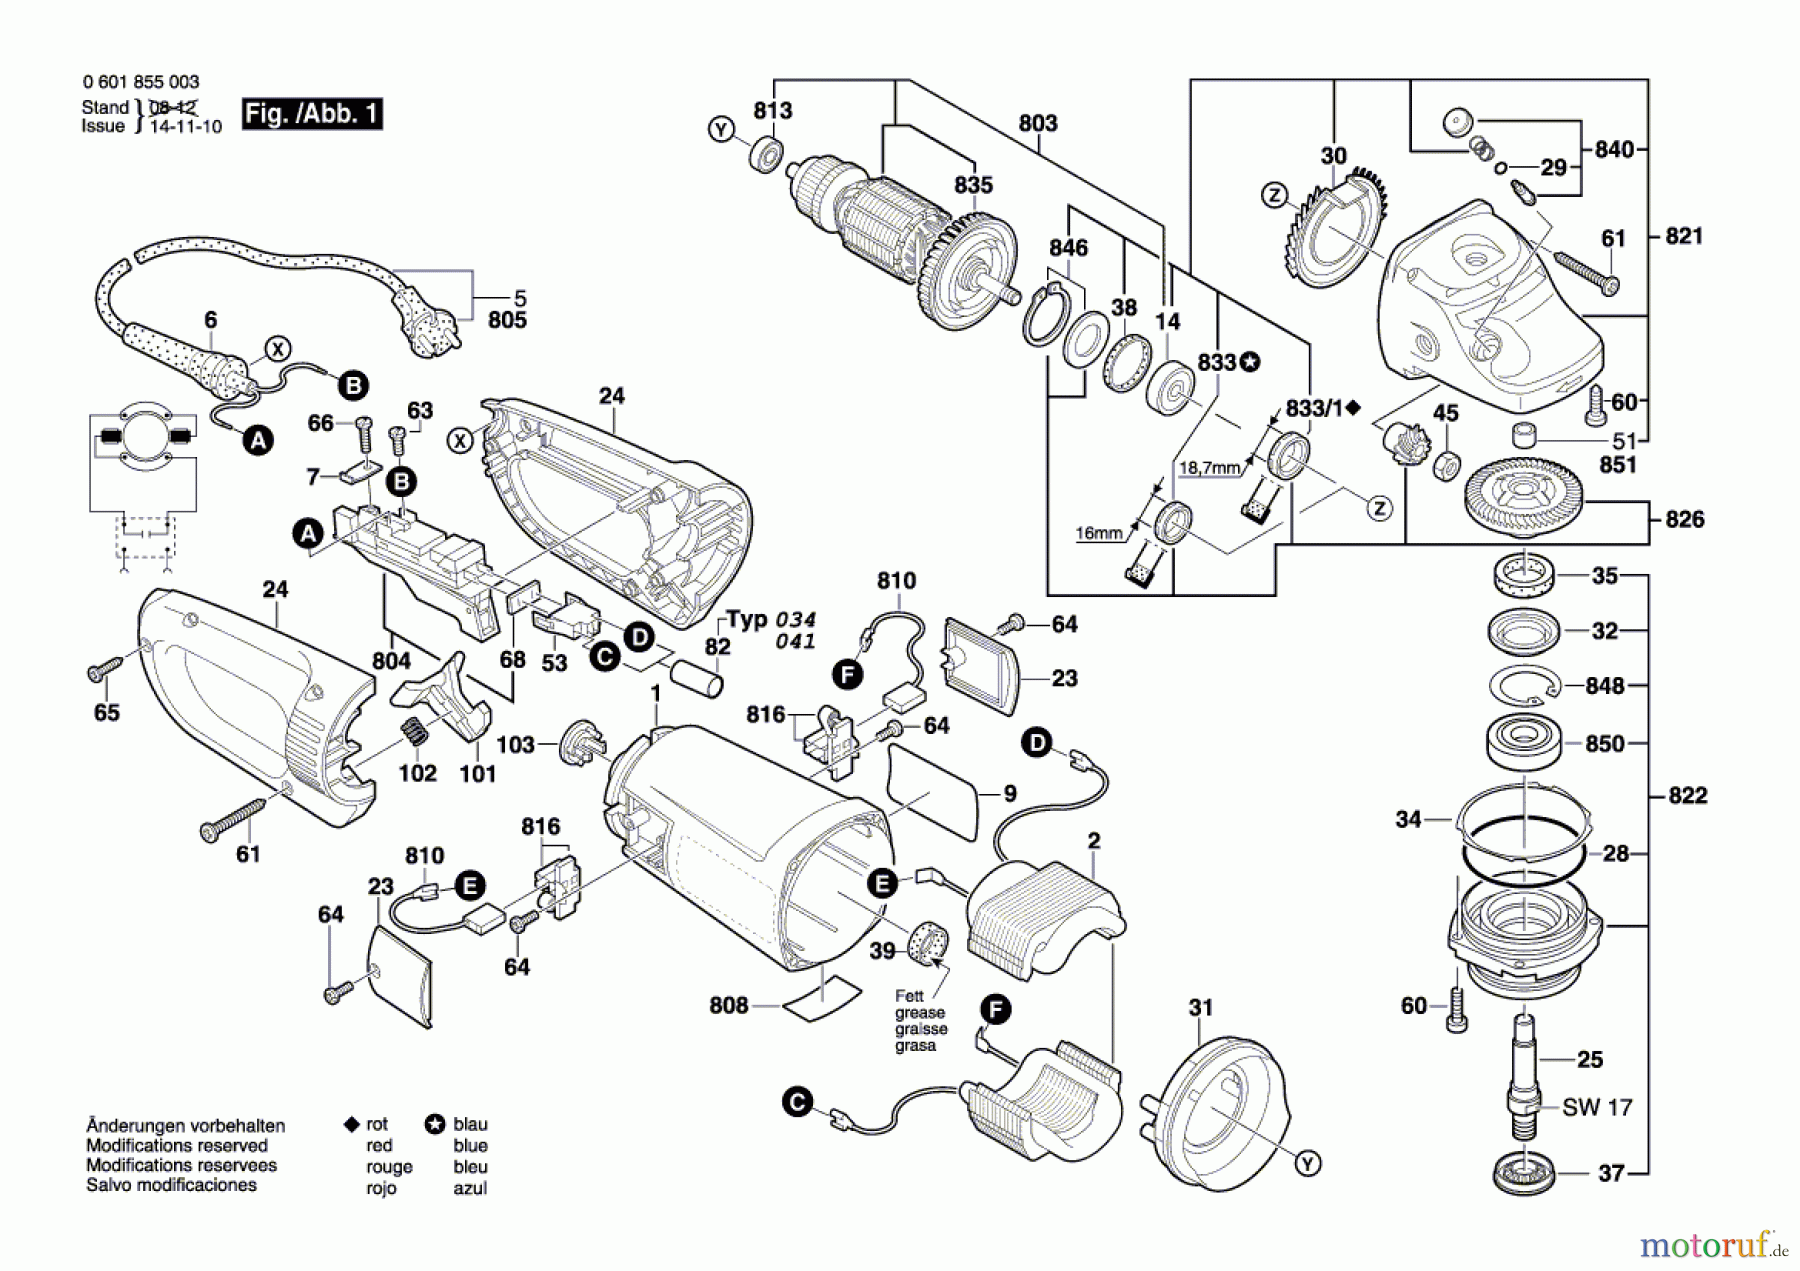  Bosch Werkzeug Winkelschleifer GWS 26-180 B Seite 1